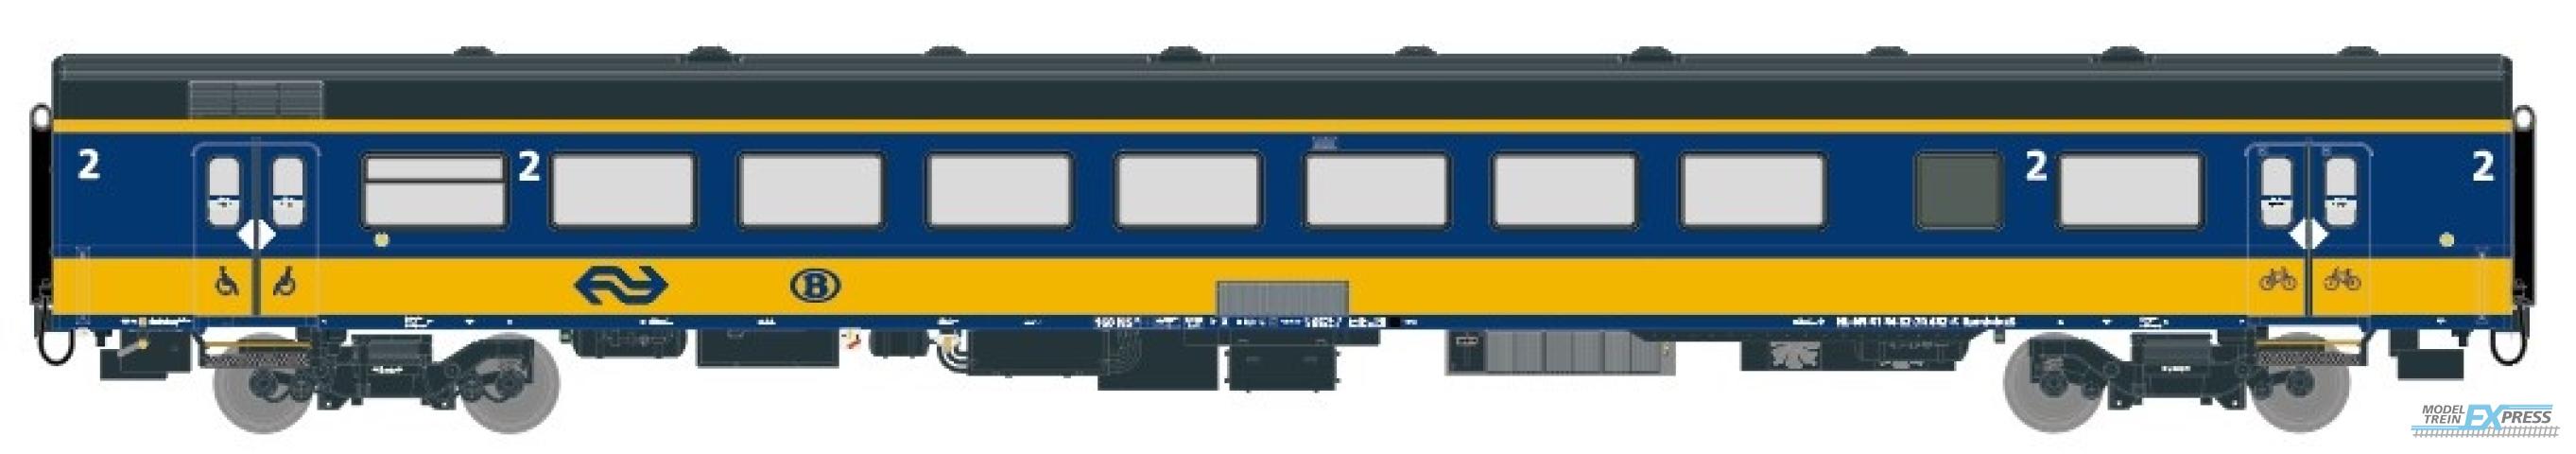 Exact-train 11030 NS ICRm Garnitur 2 (Amsterdam - Brussel) für die Hsl-Strecke eingesetzt Endwagen Bpmbdez8 ( Farbe Gelb / Blau), Ep. VI